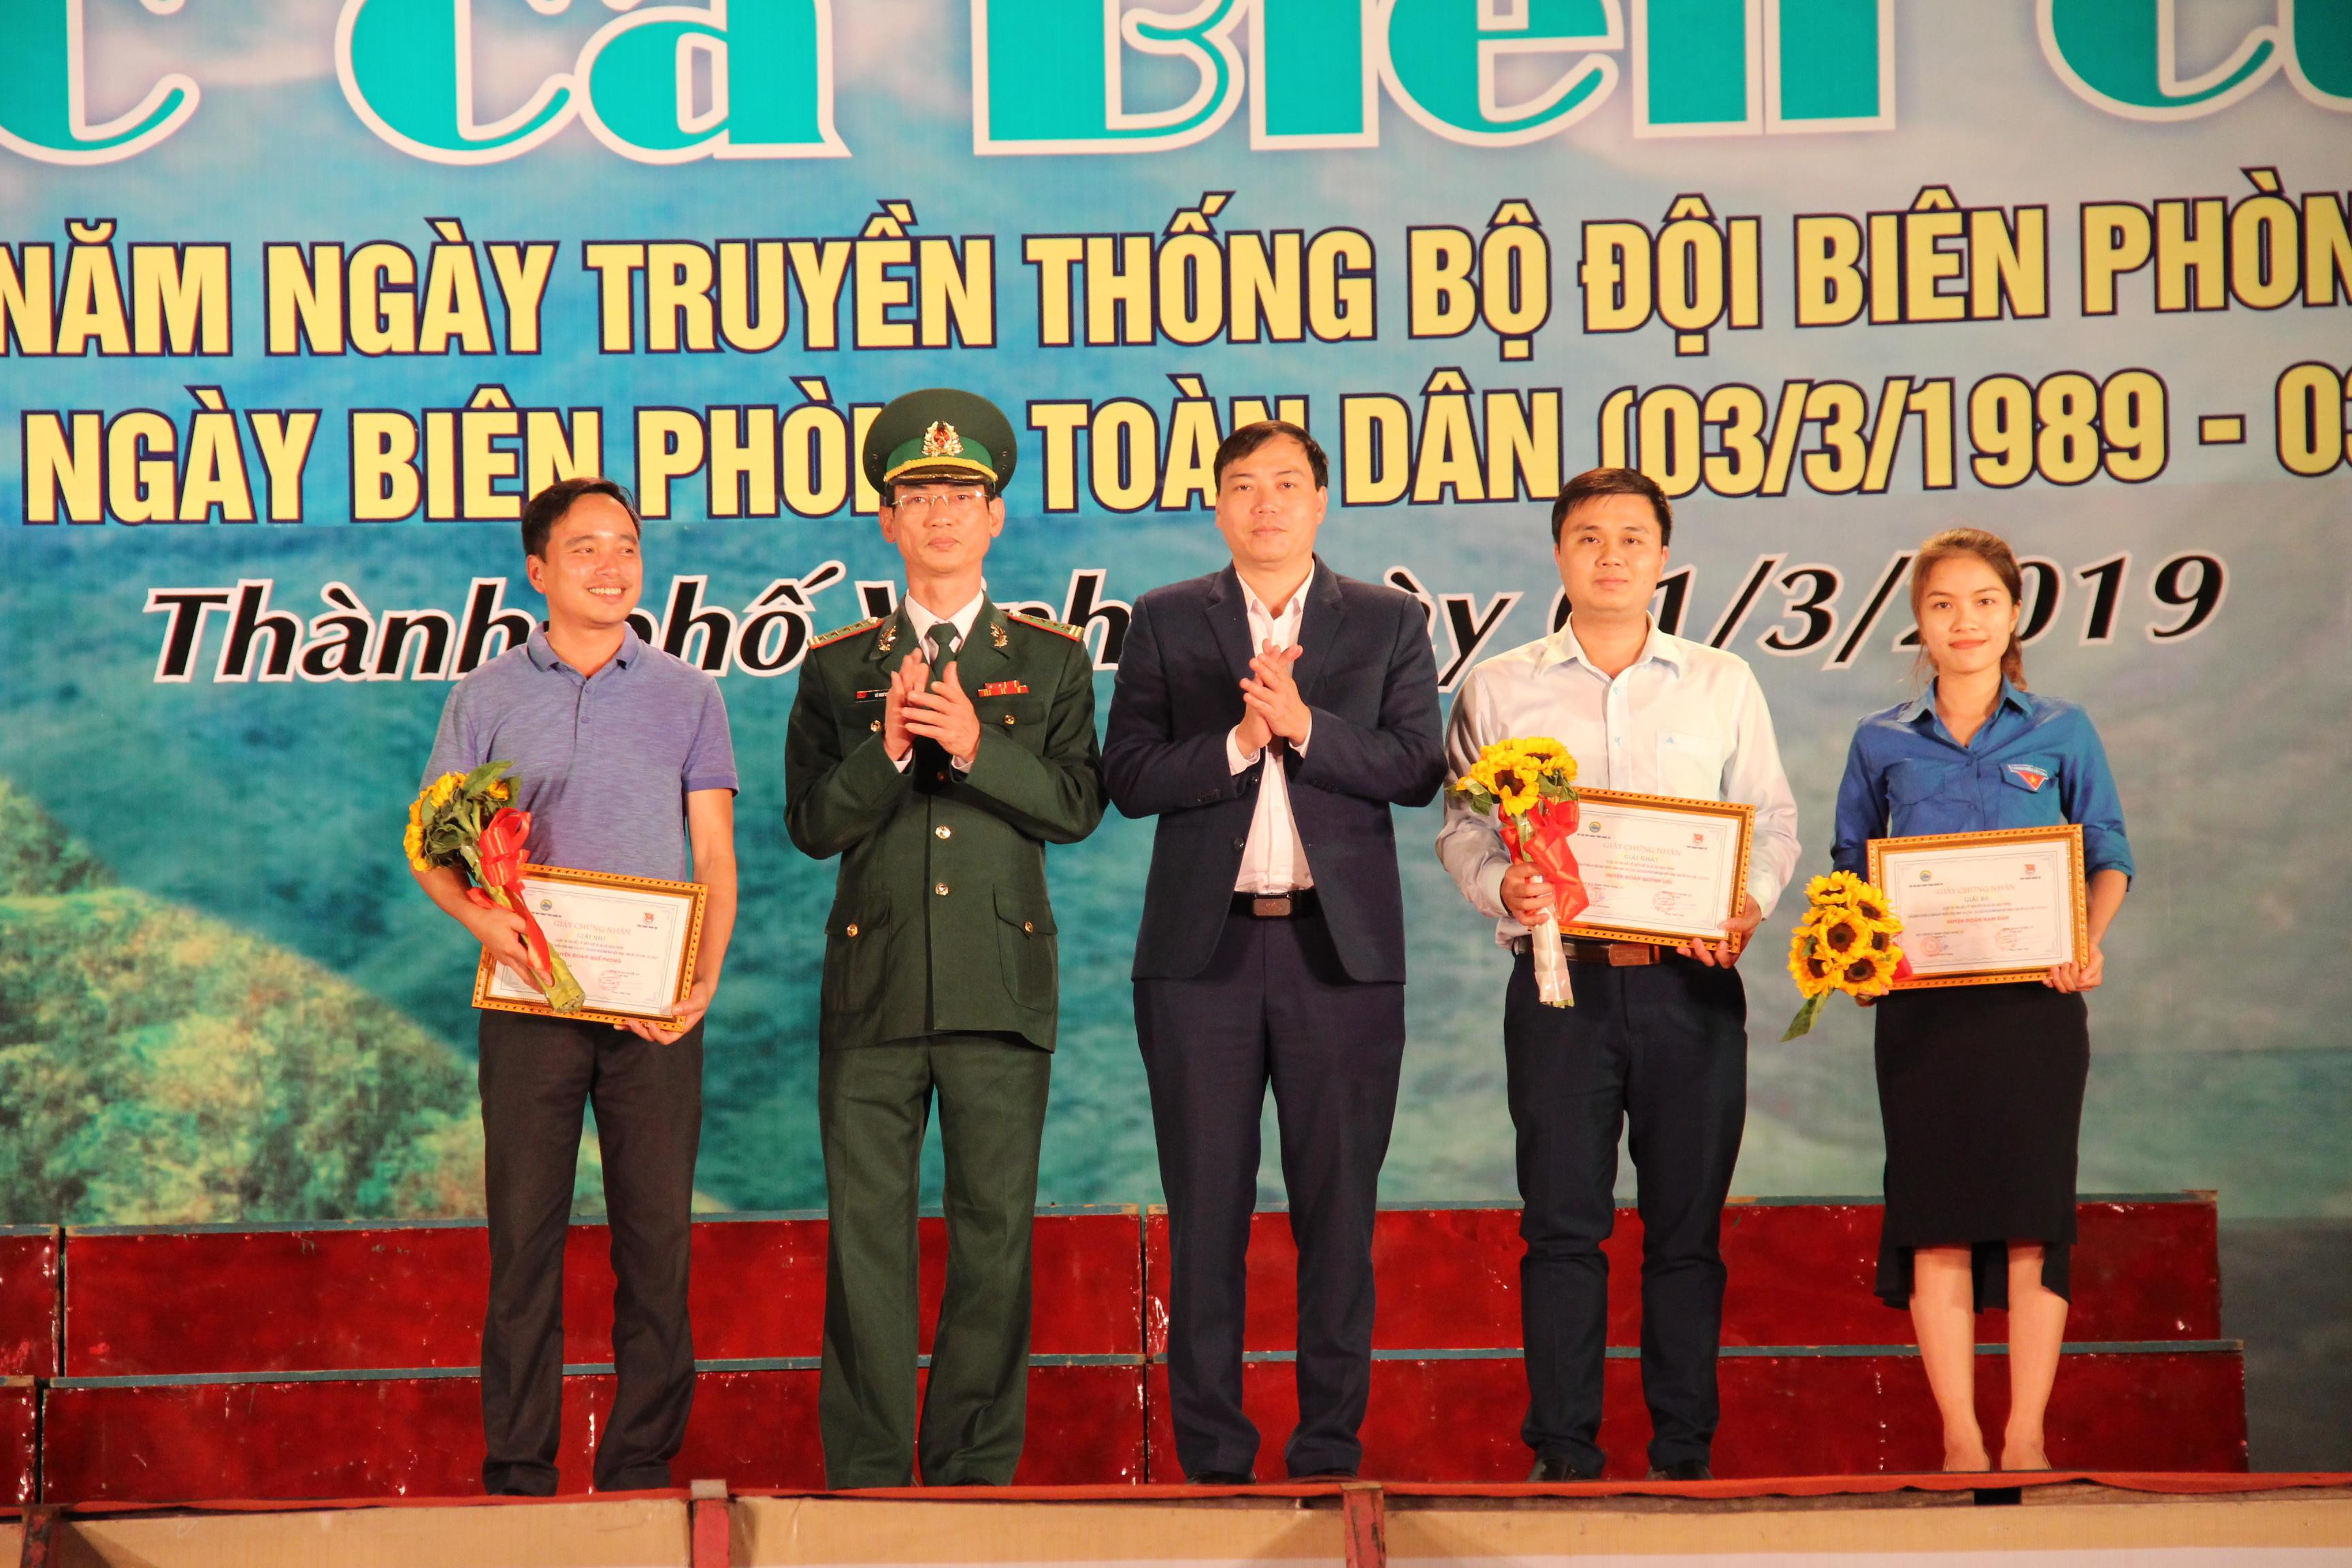 Đại tá Lê Như Cương – Chính ủy Bộ đội Biên phòng tỉnh và đồng chí Chu Đức Thái – Phó Bí thư Tỉnh đoàn trao giải cho các tập thể.